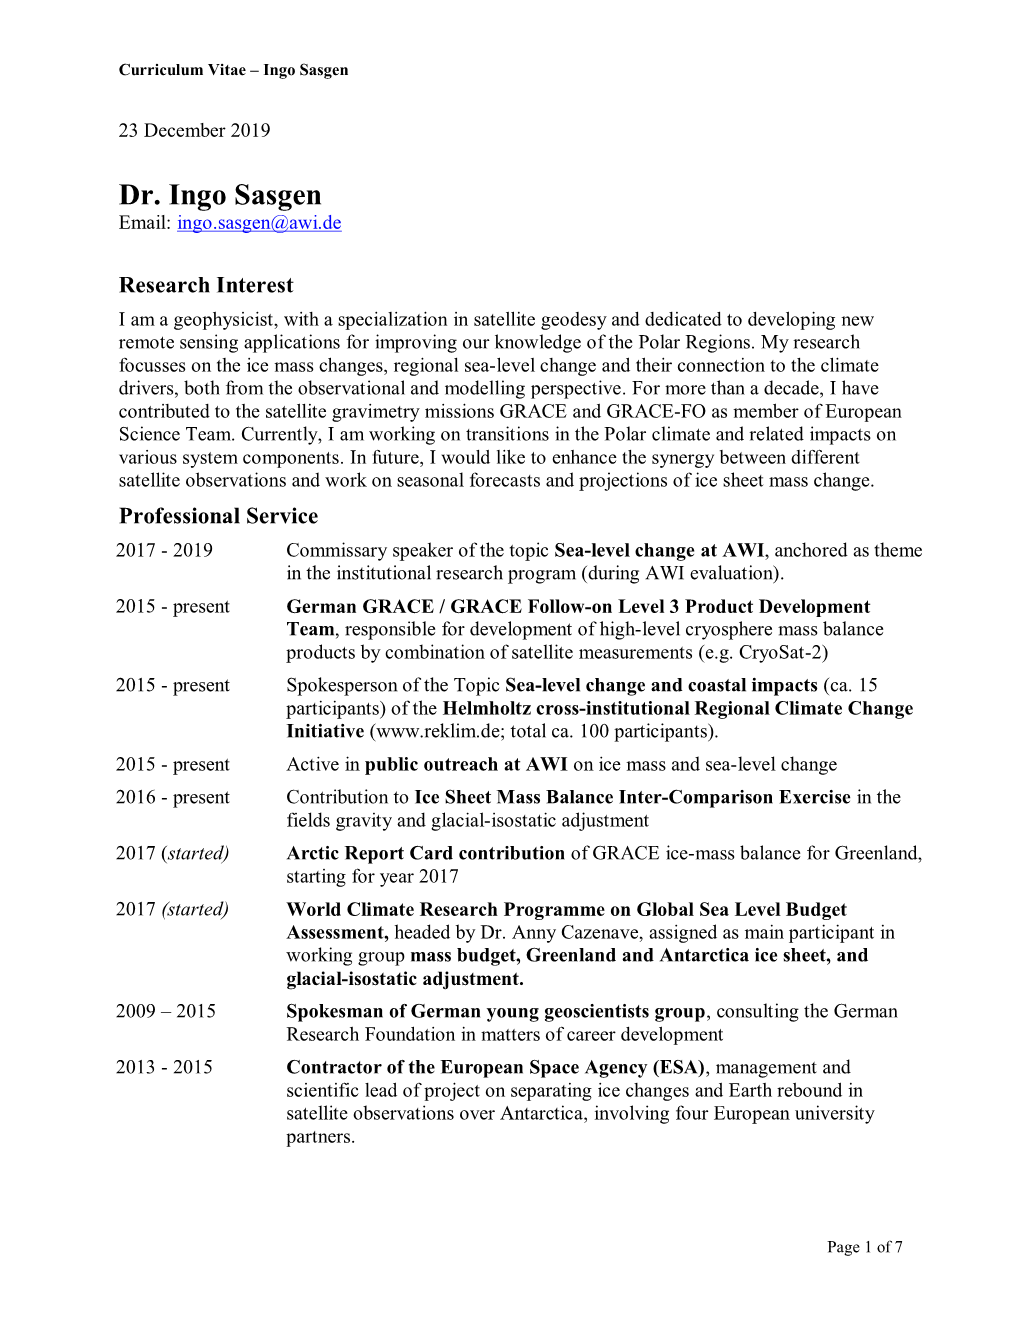 Dr. Ingo Sasgen Email: Ingo.Sasgen@Awi.De